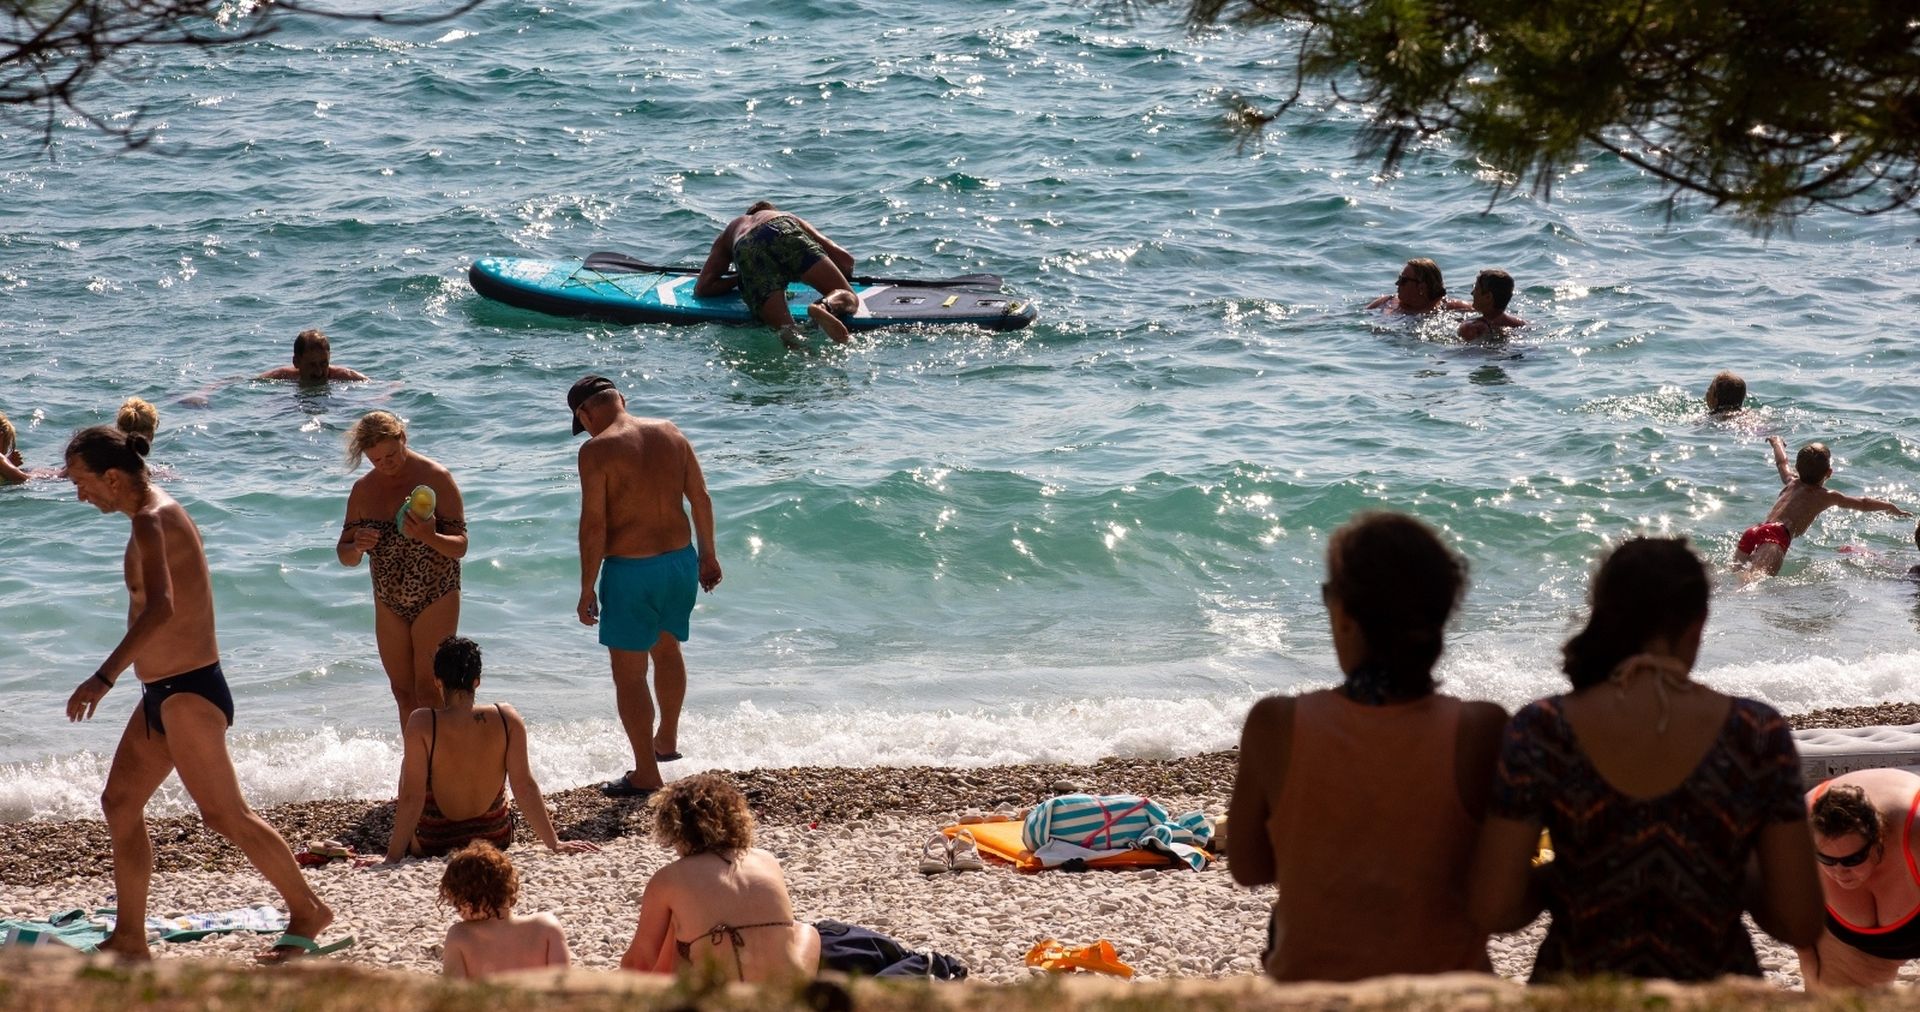 29.08.2020., Pula - Skokovi u vodu, kupanje i suncanje na plazi Lungo Mare
Photo: Srecko Niketic/PIXSELL